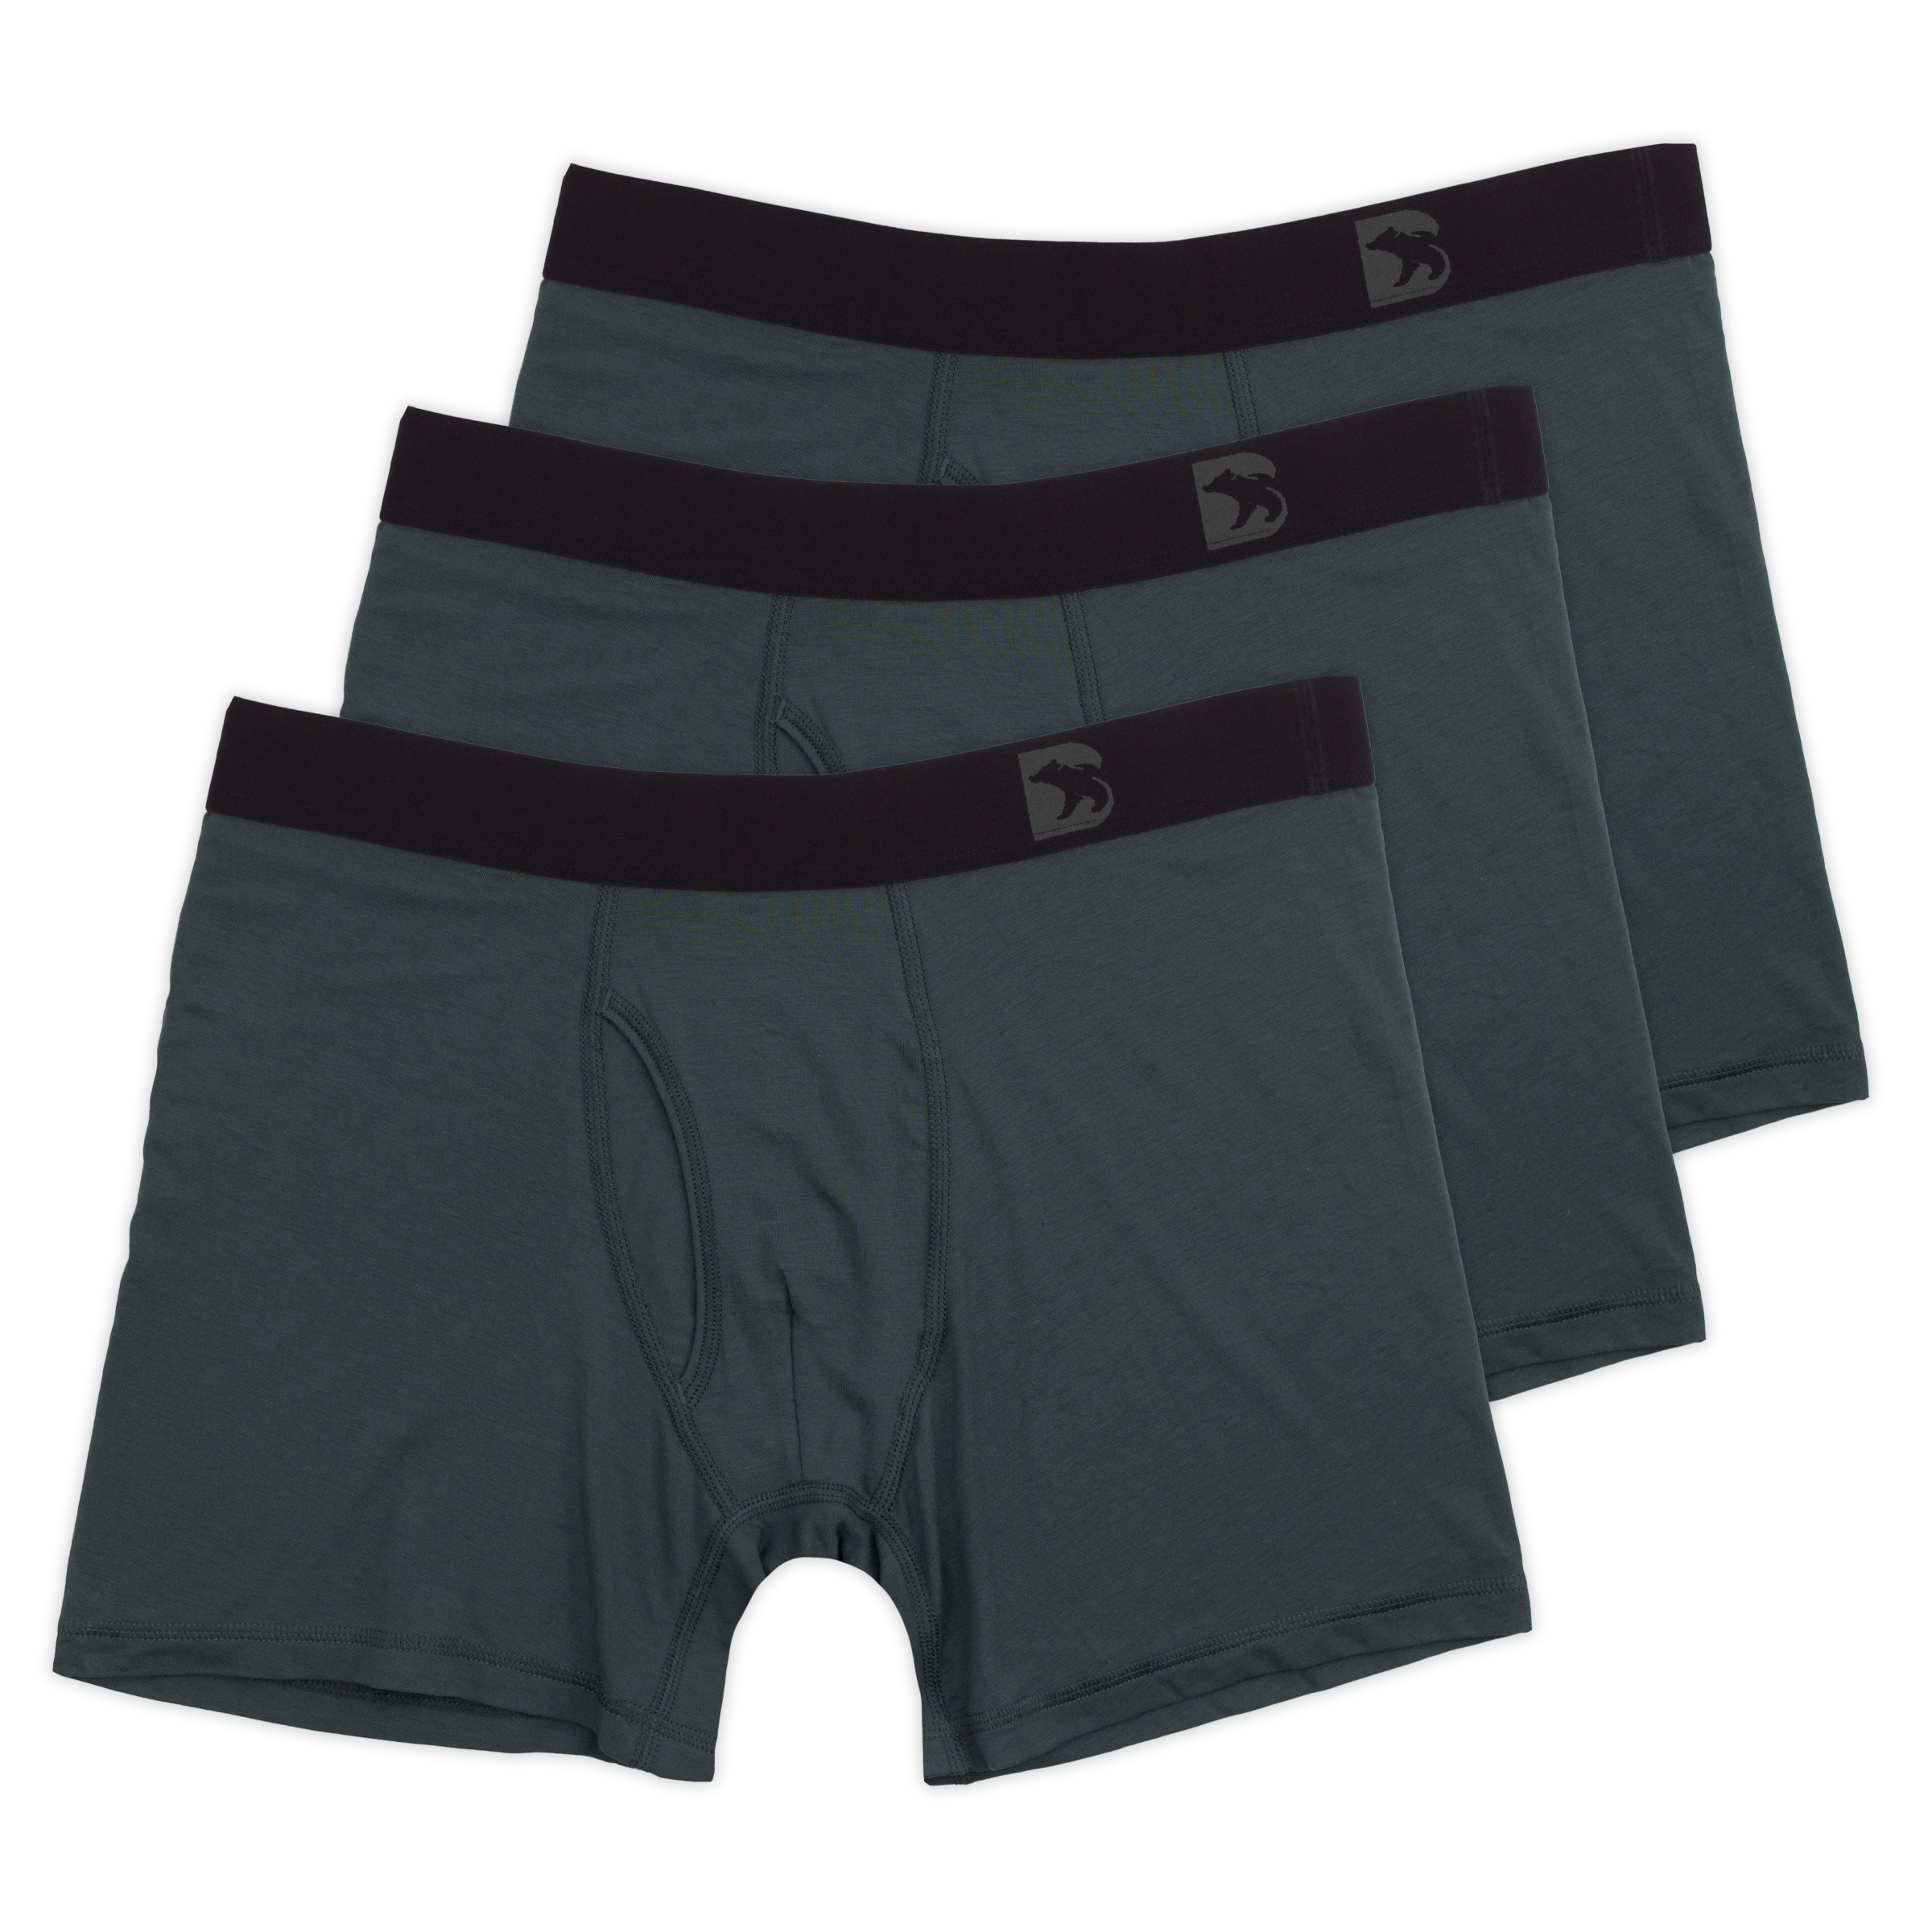 Jockey Men's Underwear Supersoft Modal Boxer Brief - 2 Pack, Black